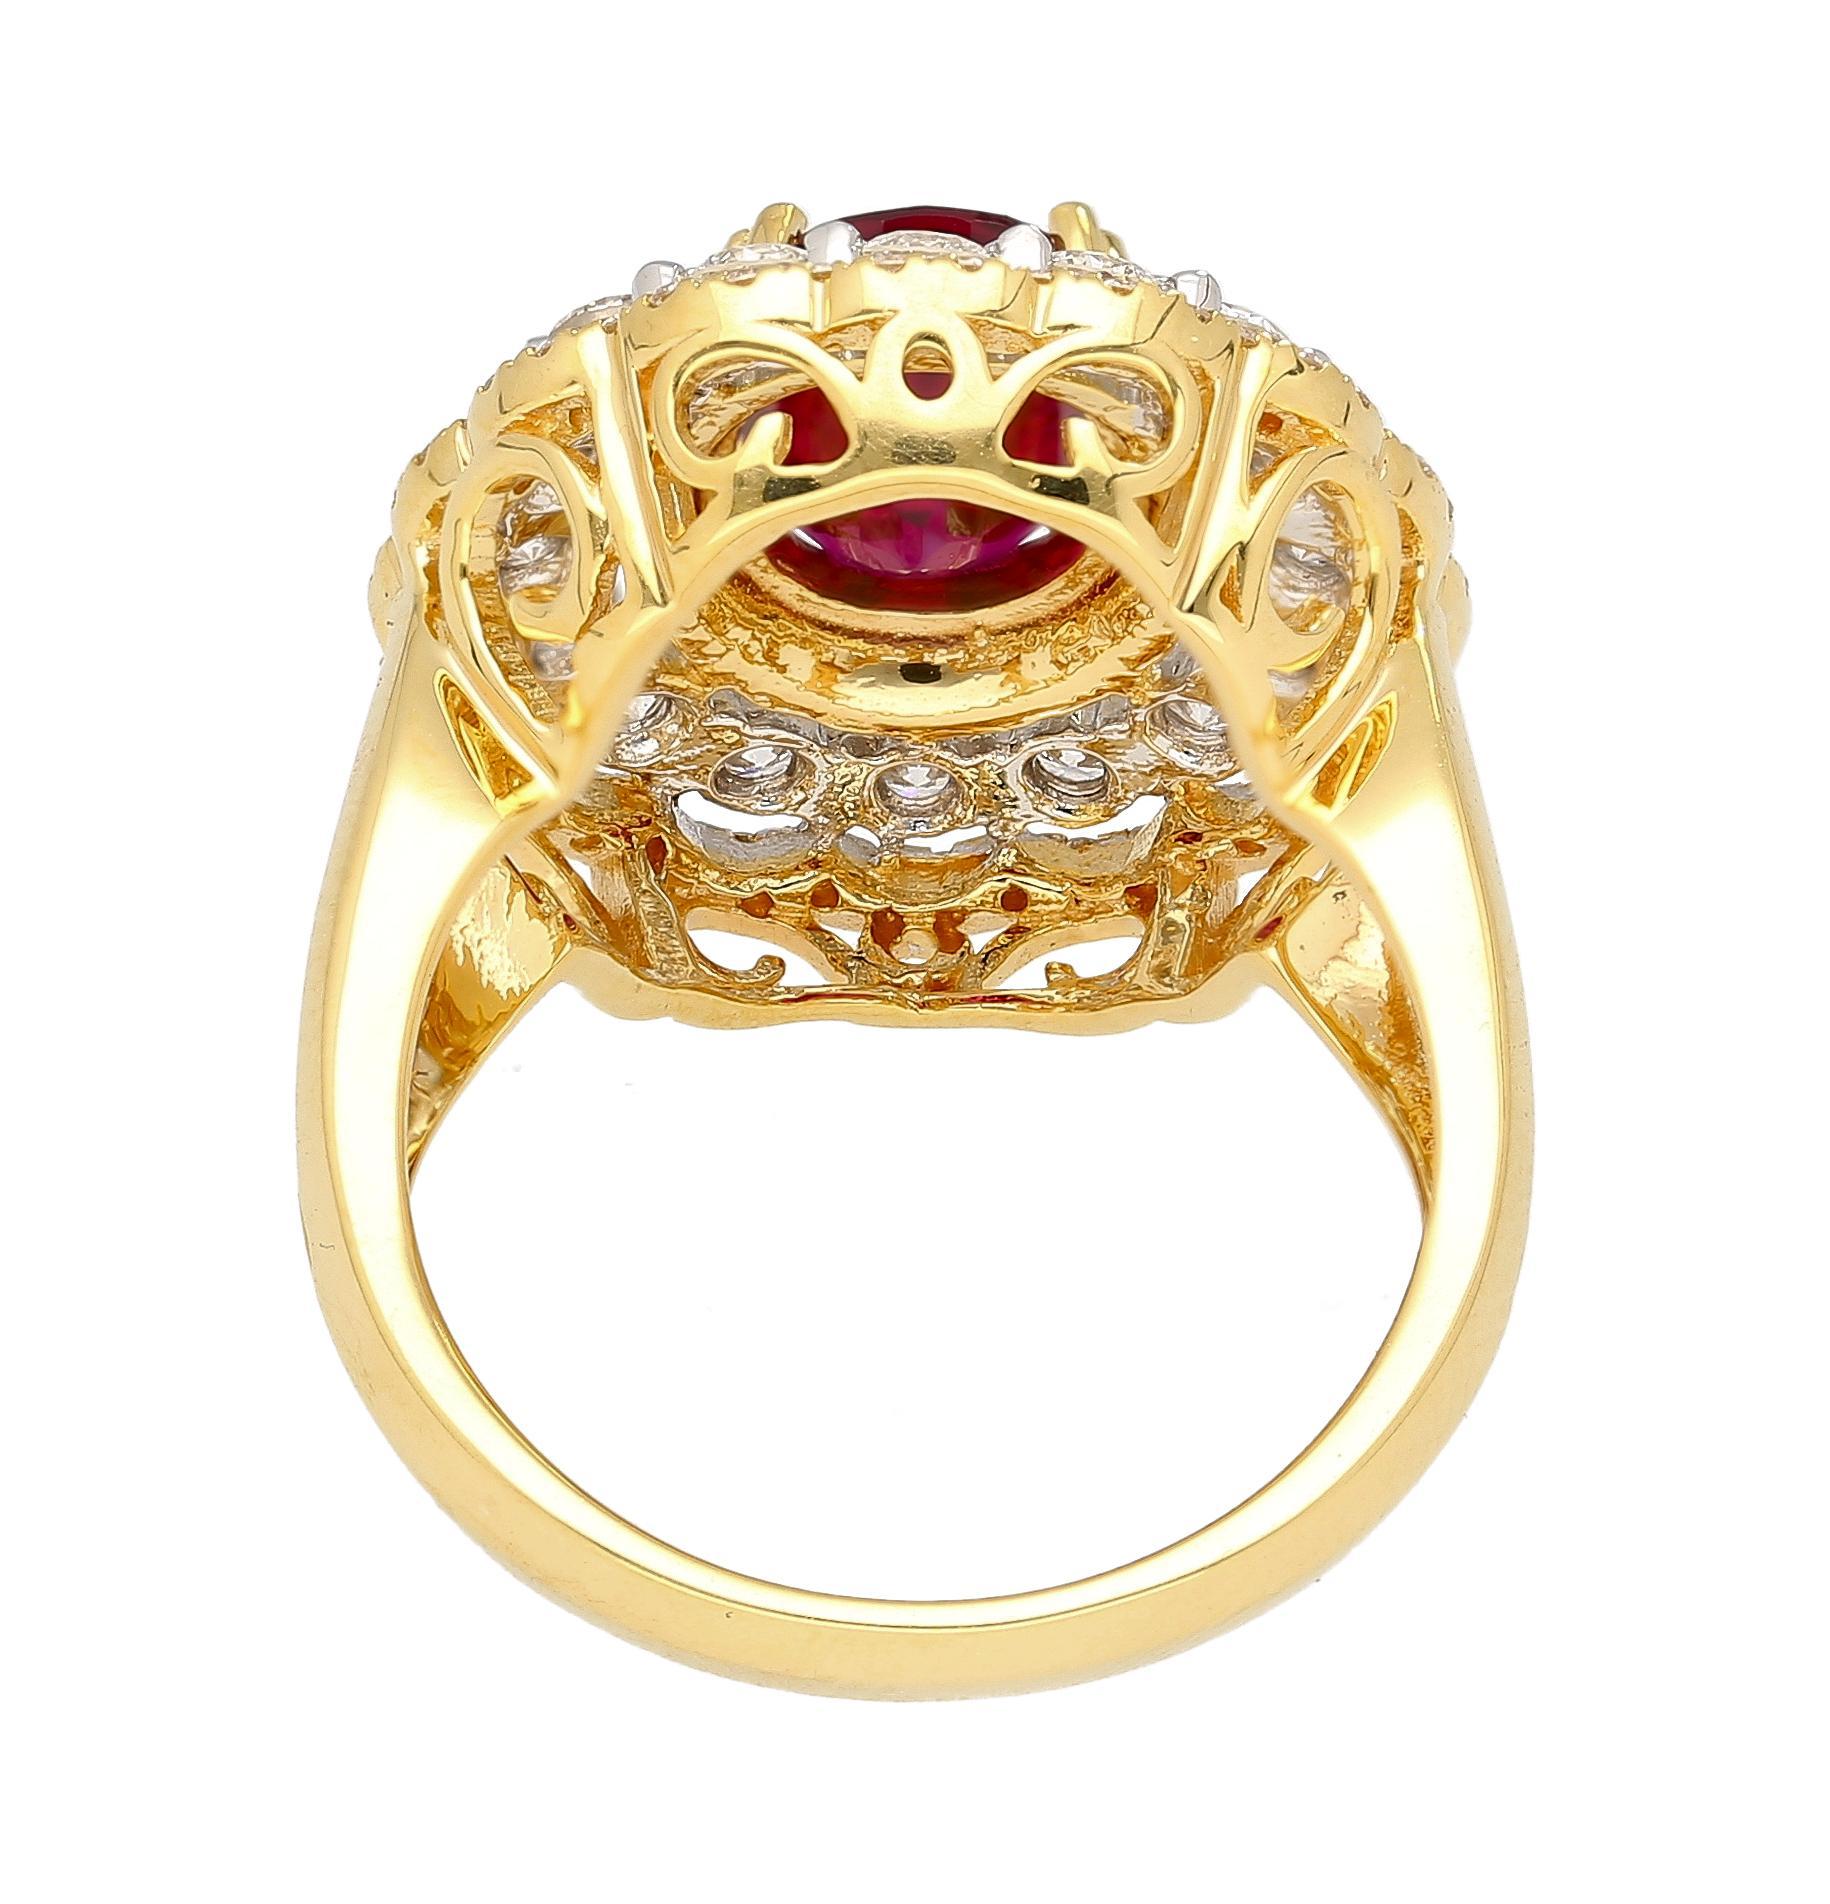 Certifié GRS, le rubis thaïlandais ovale de 2,58 carats est entouré de trois anneaux de diamants ronds en or bicolore 18 carats. Monture de bague vintage d'inspiration rétro. 

16 diamants naturels de taille ronde totalisant 0,91 carat et 70